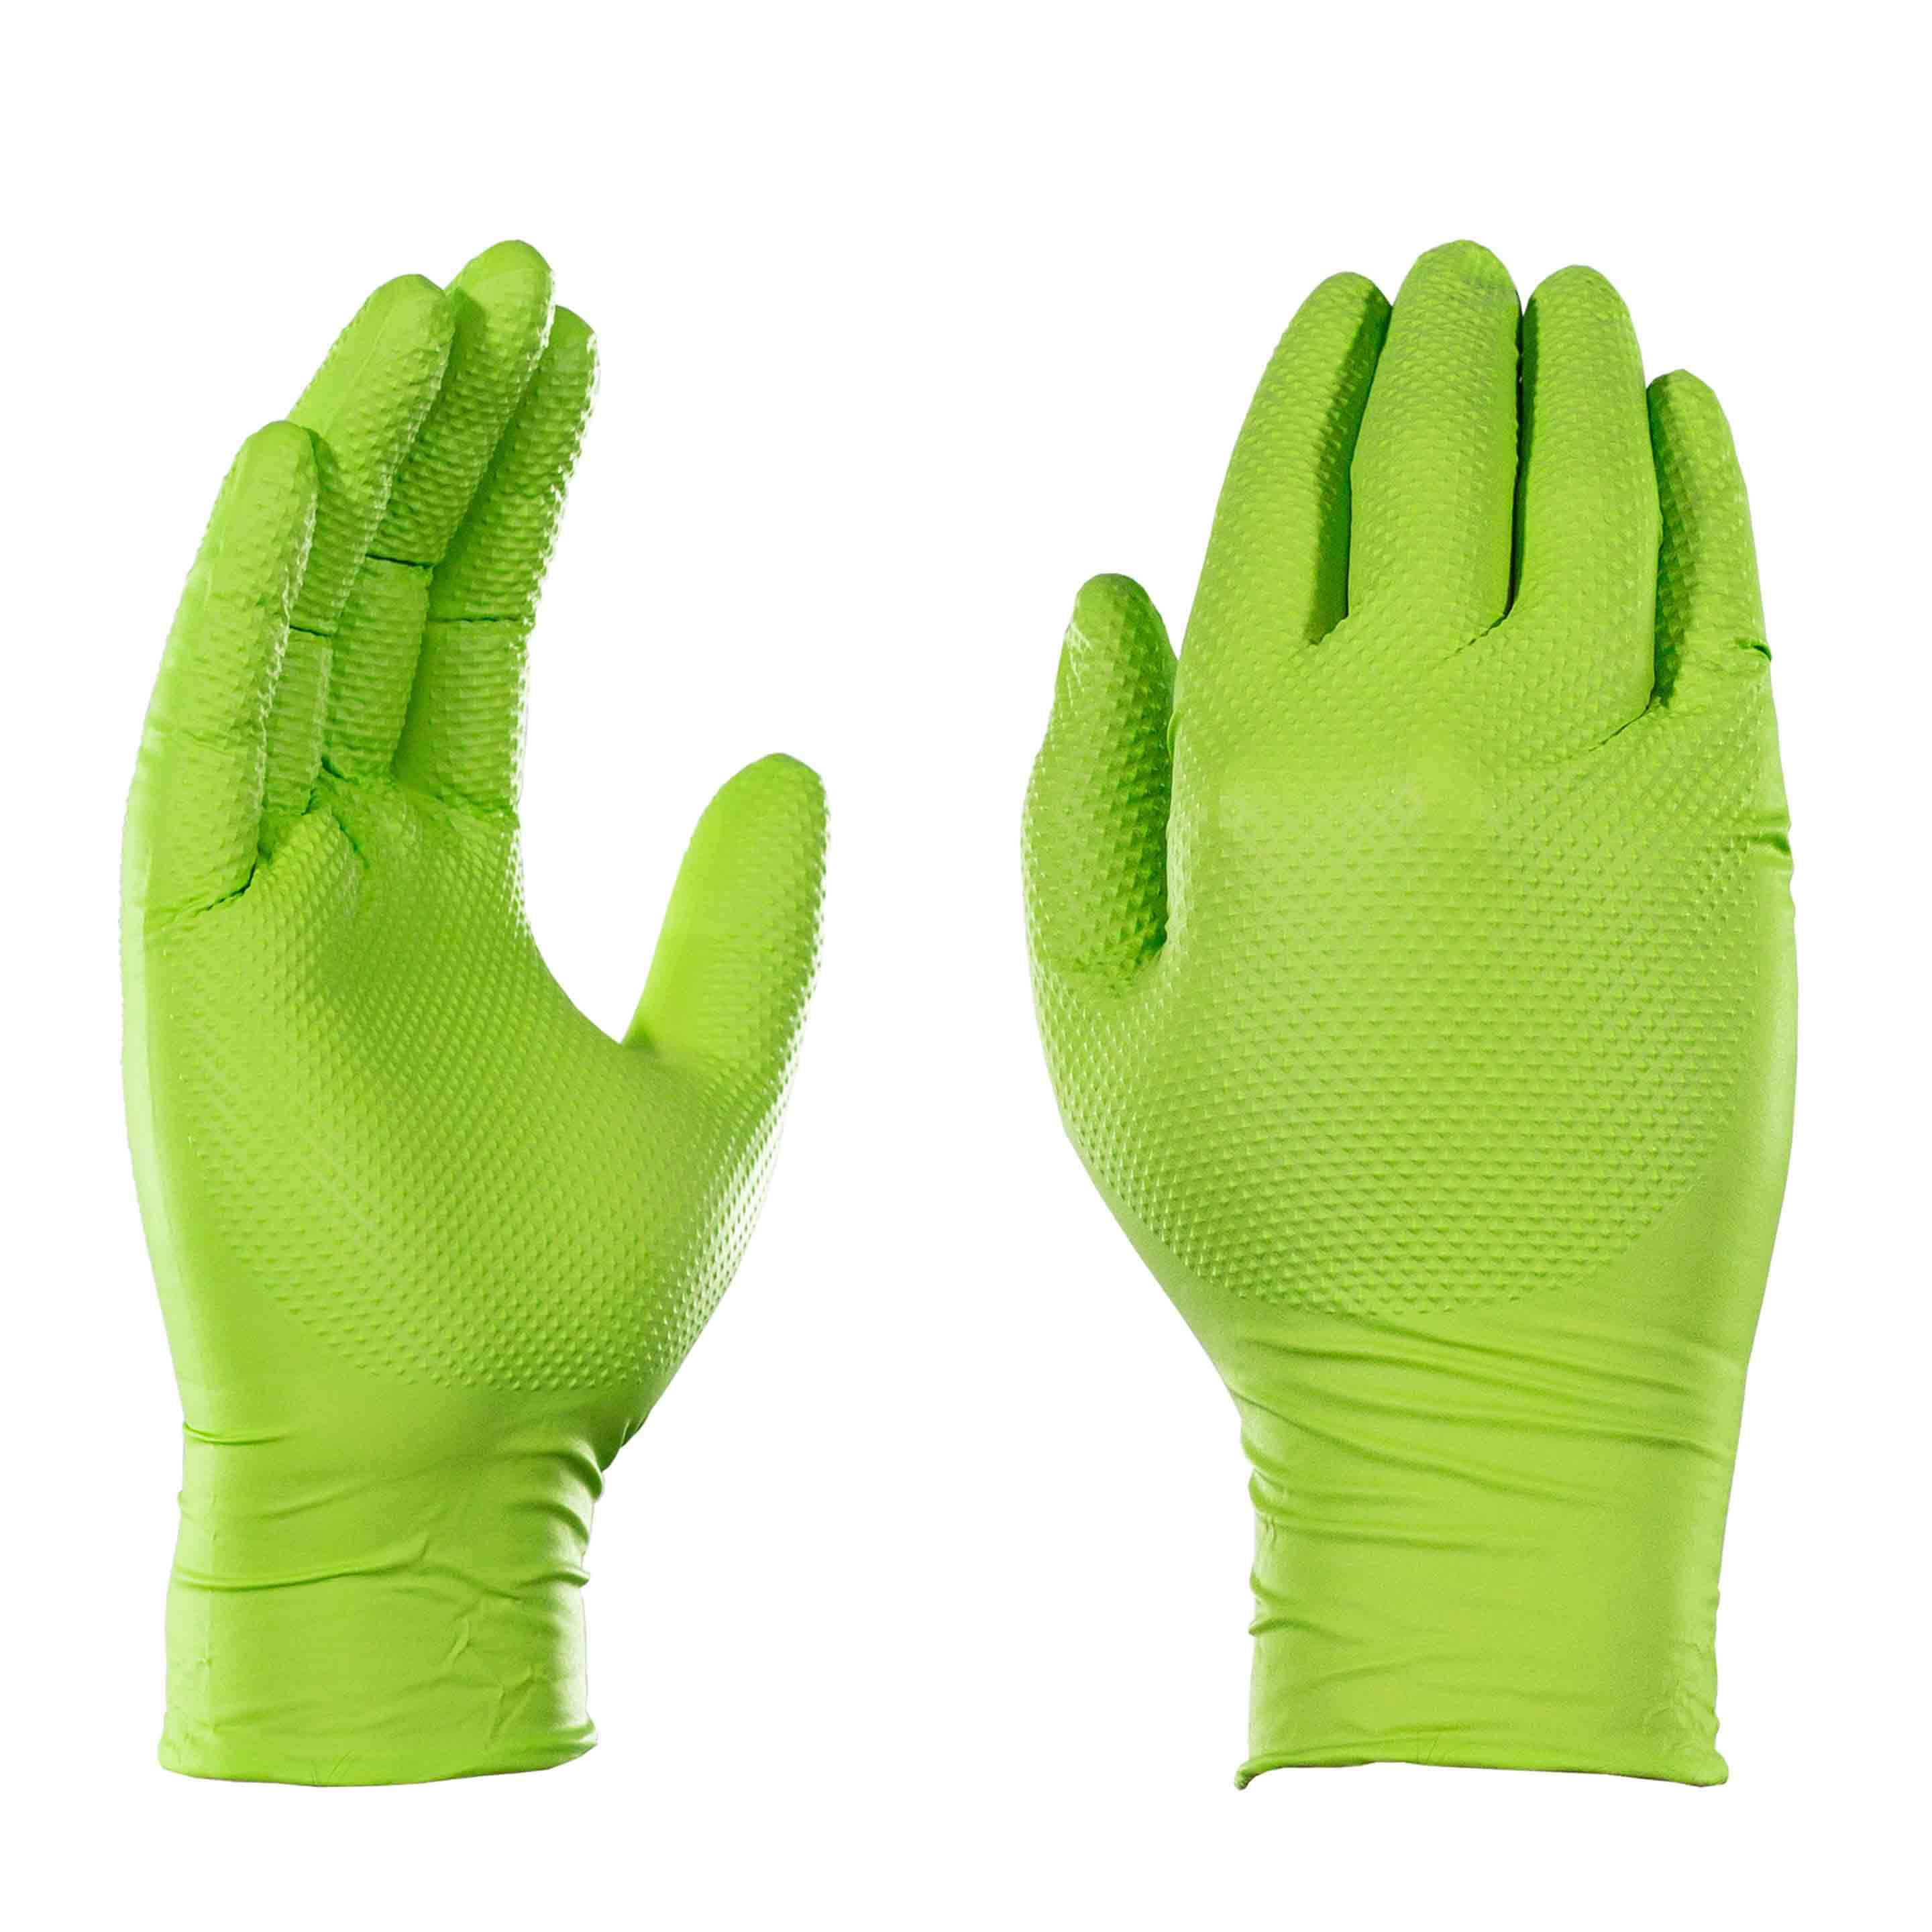 AMMEX Gloveworks HD Green Nitrile Powder Free Industrial 8MIL 